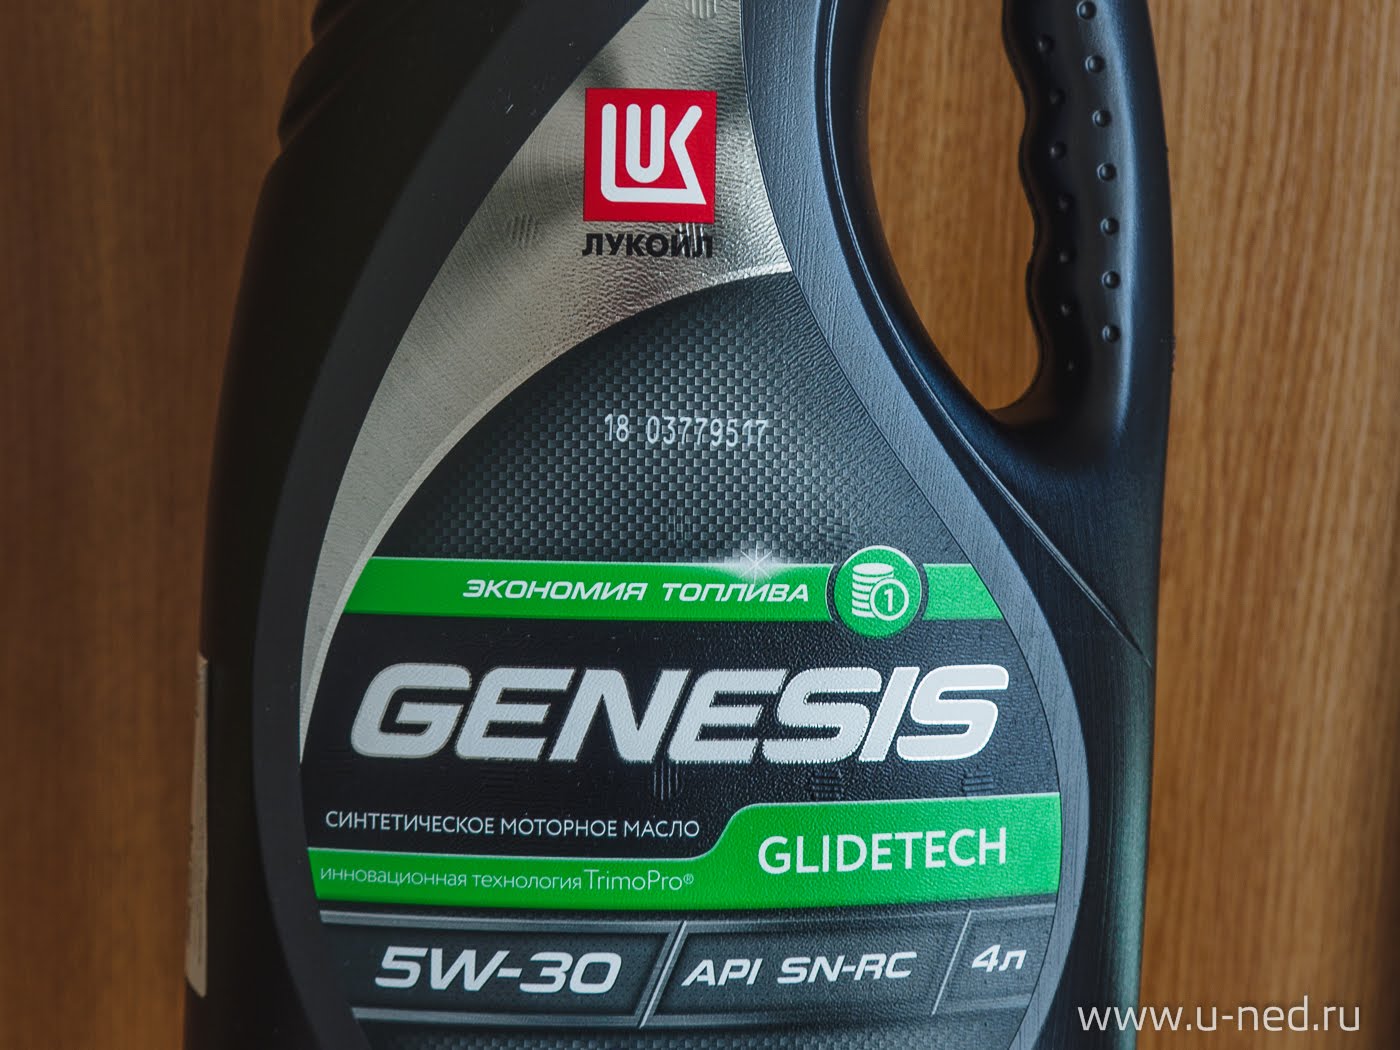 Как проверить масло лукойл генезис на подлинность. Lukoil Genesis glidetech 5w-30. Lukoil Genesis glidetech 5w-30 допуски. Лукойл Genesis glidetech.